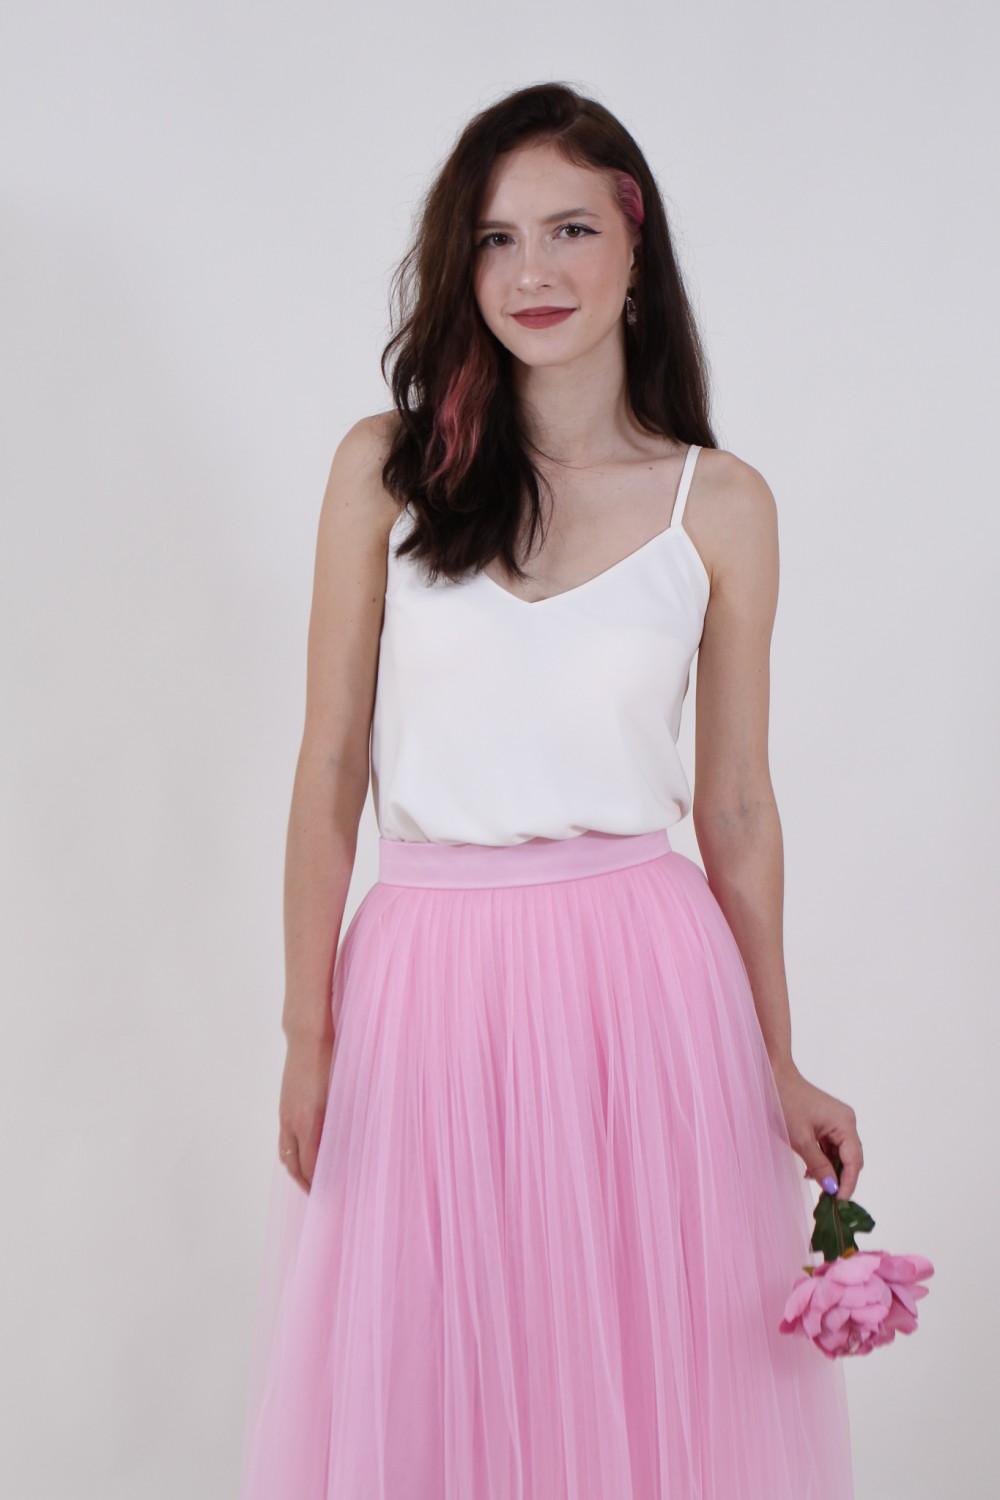 Пышная юбка из фатина (60 цветов)  розовая - фото